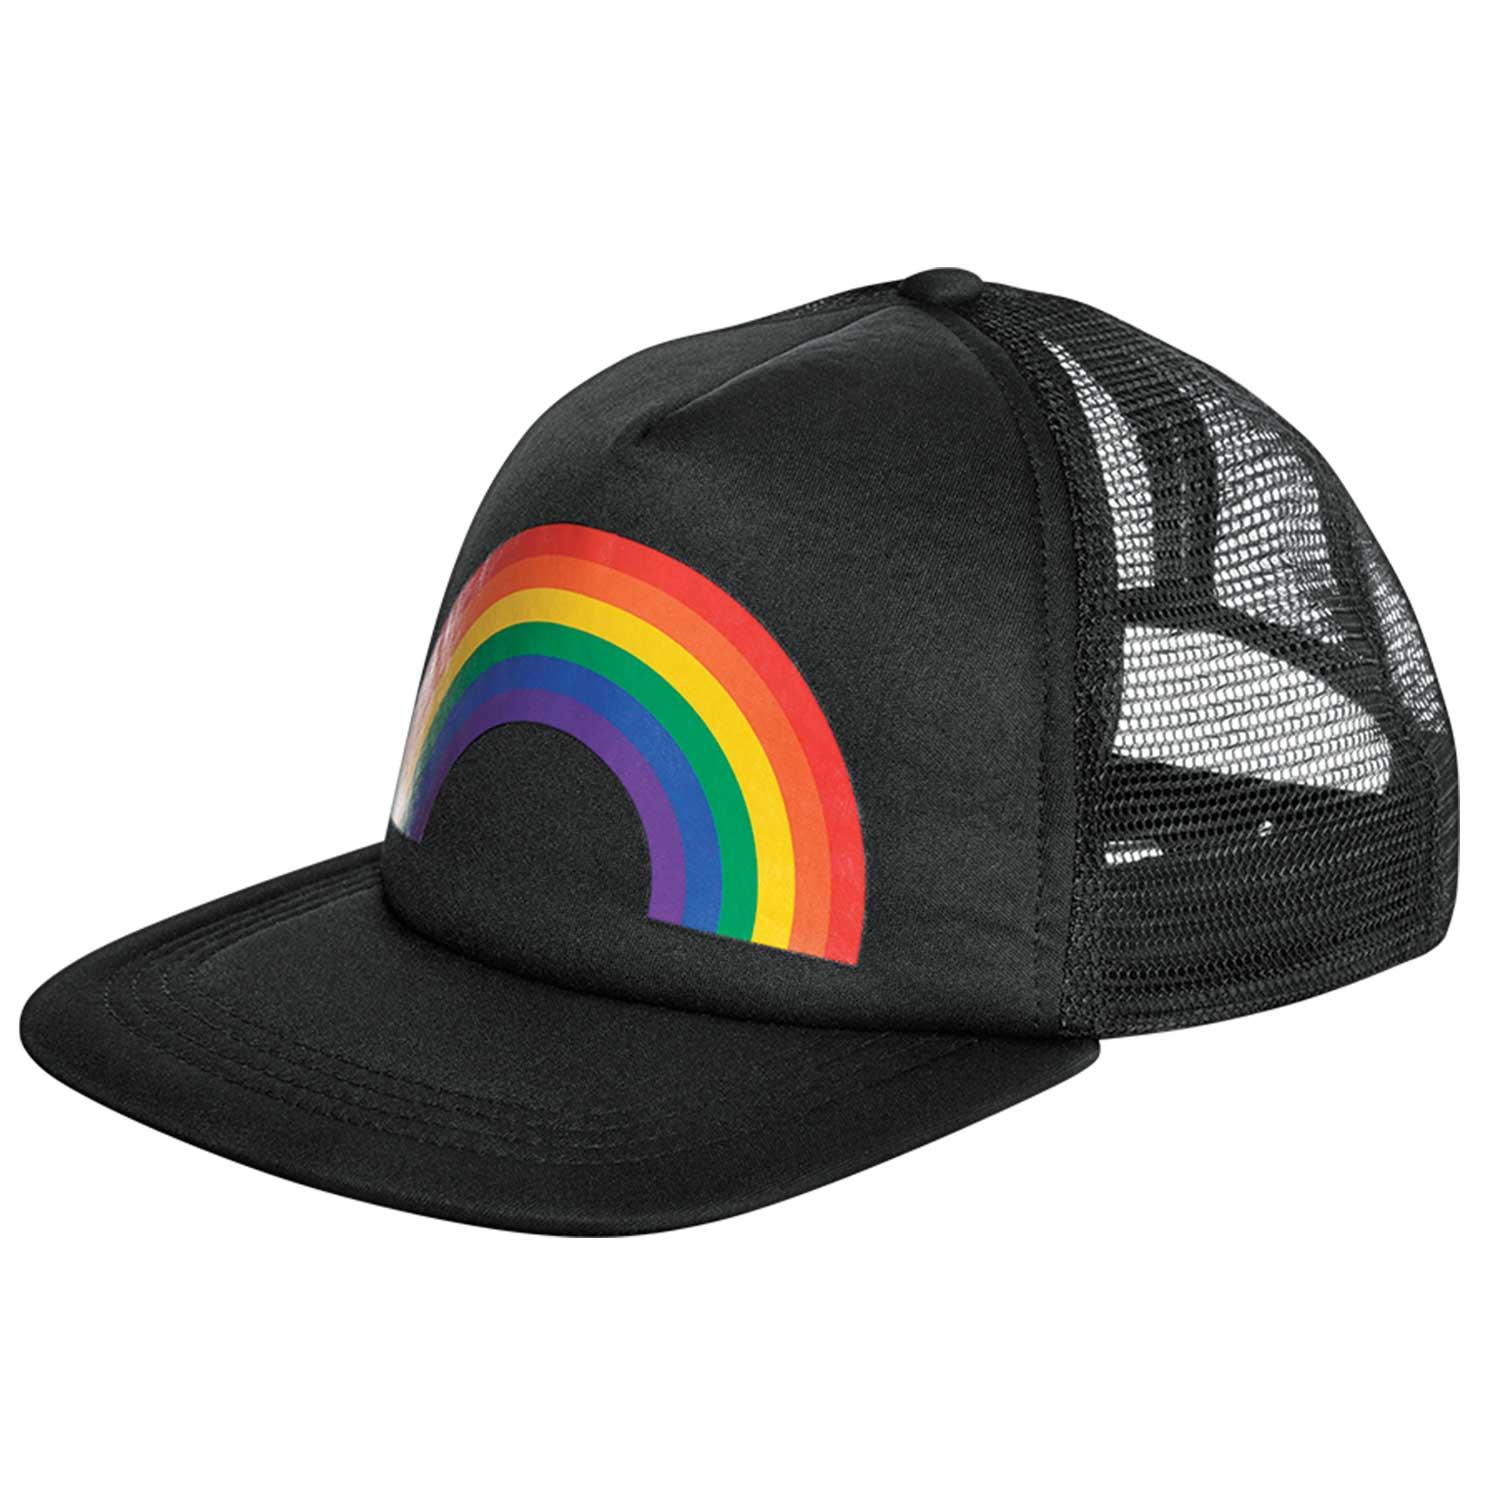 Rainbow Baseball Cap Black